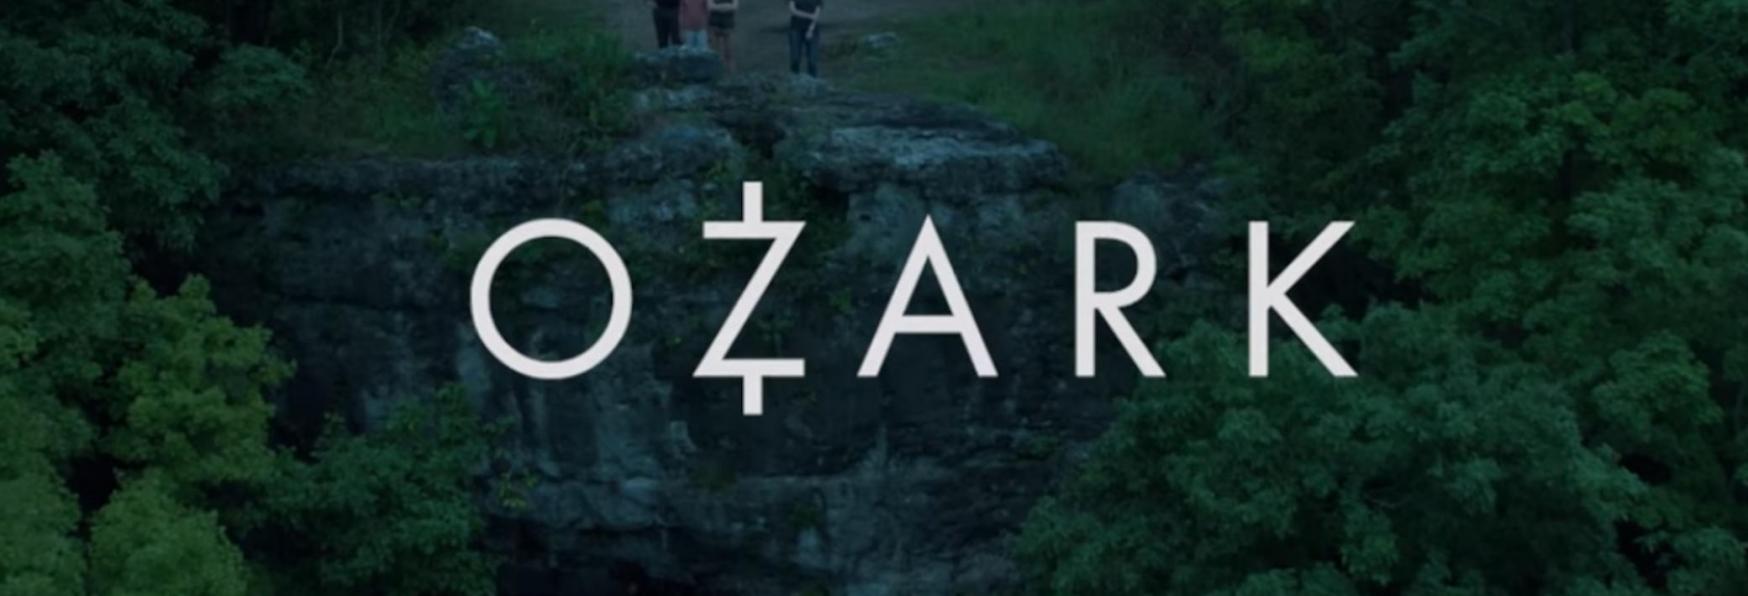 Ozark 4: il Teaser Trailer e alcune Immagini della Stagione Finale, in Uscita su Netflix